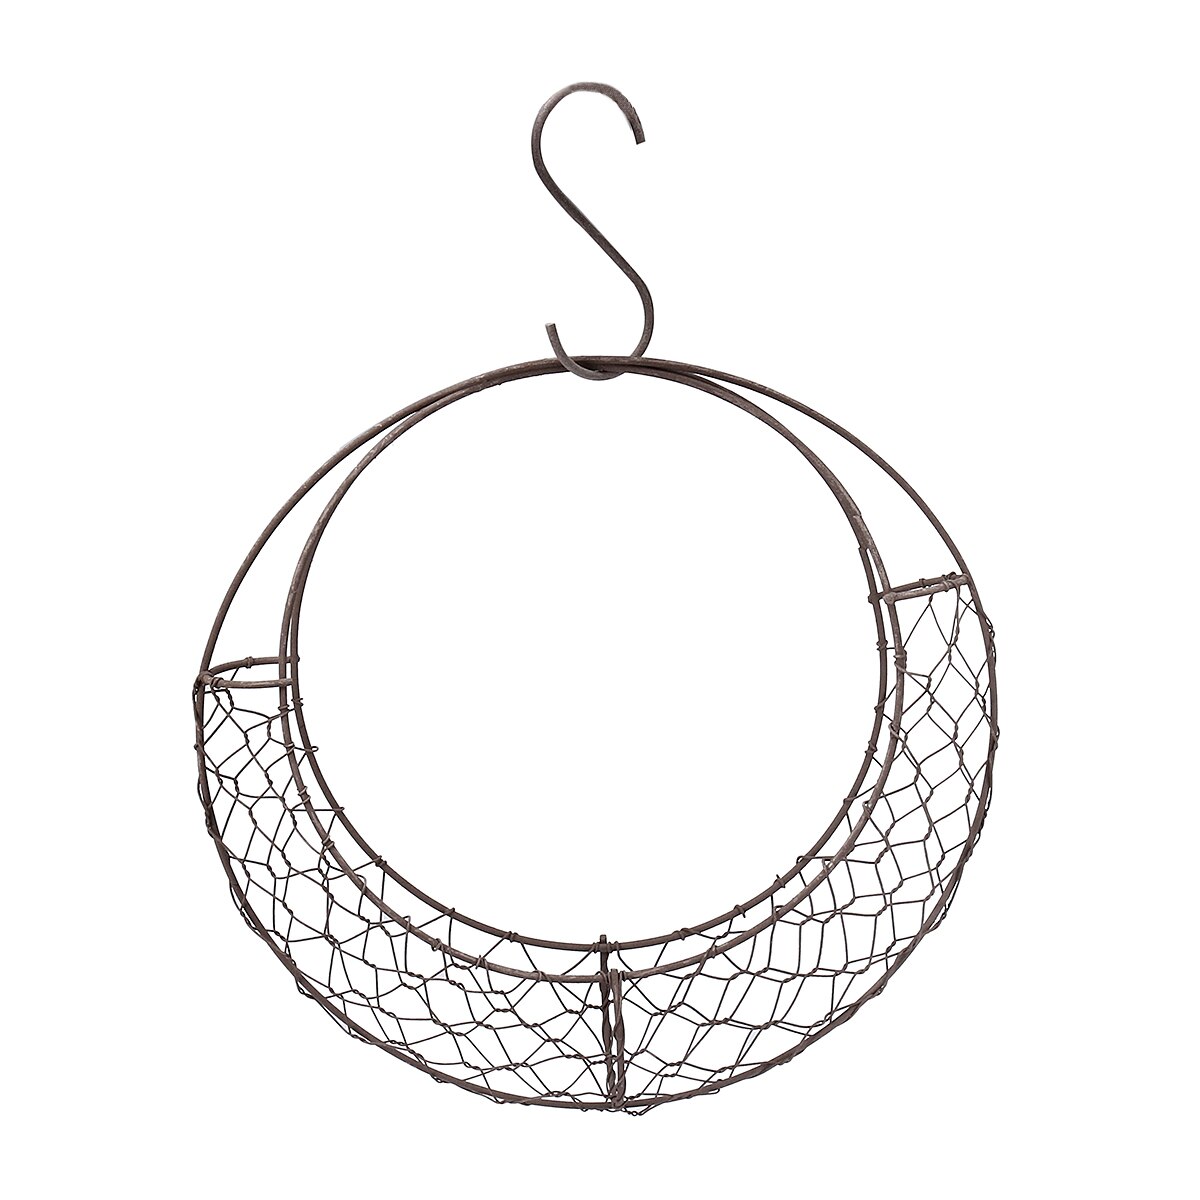 28cm måneform jerntråd kransramme metal saftig gryde hængende kurv plante blomsterholder bryllup / hjem / cafe / festindretning